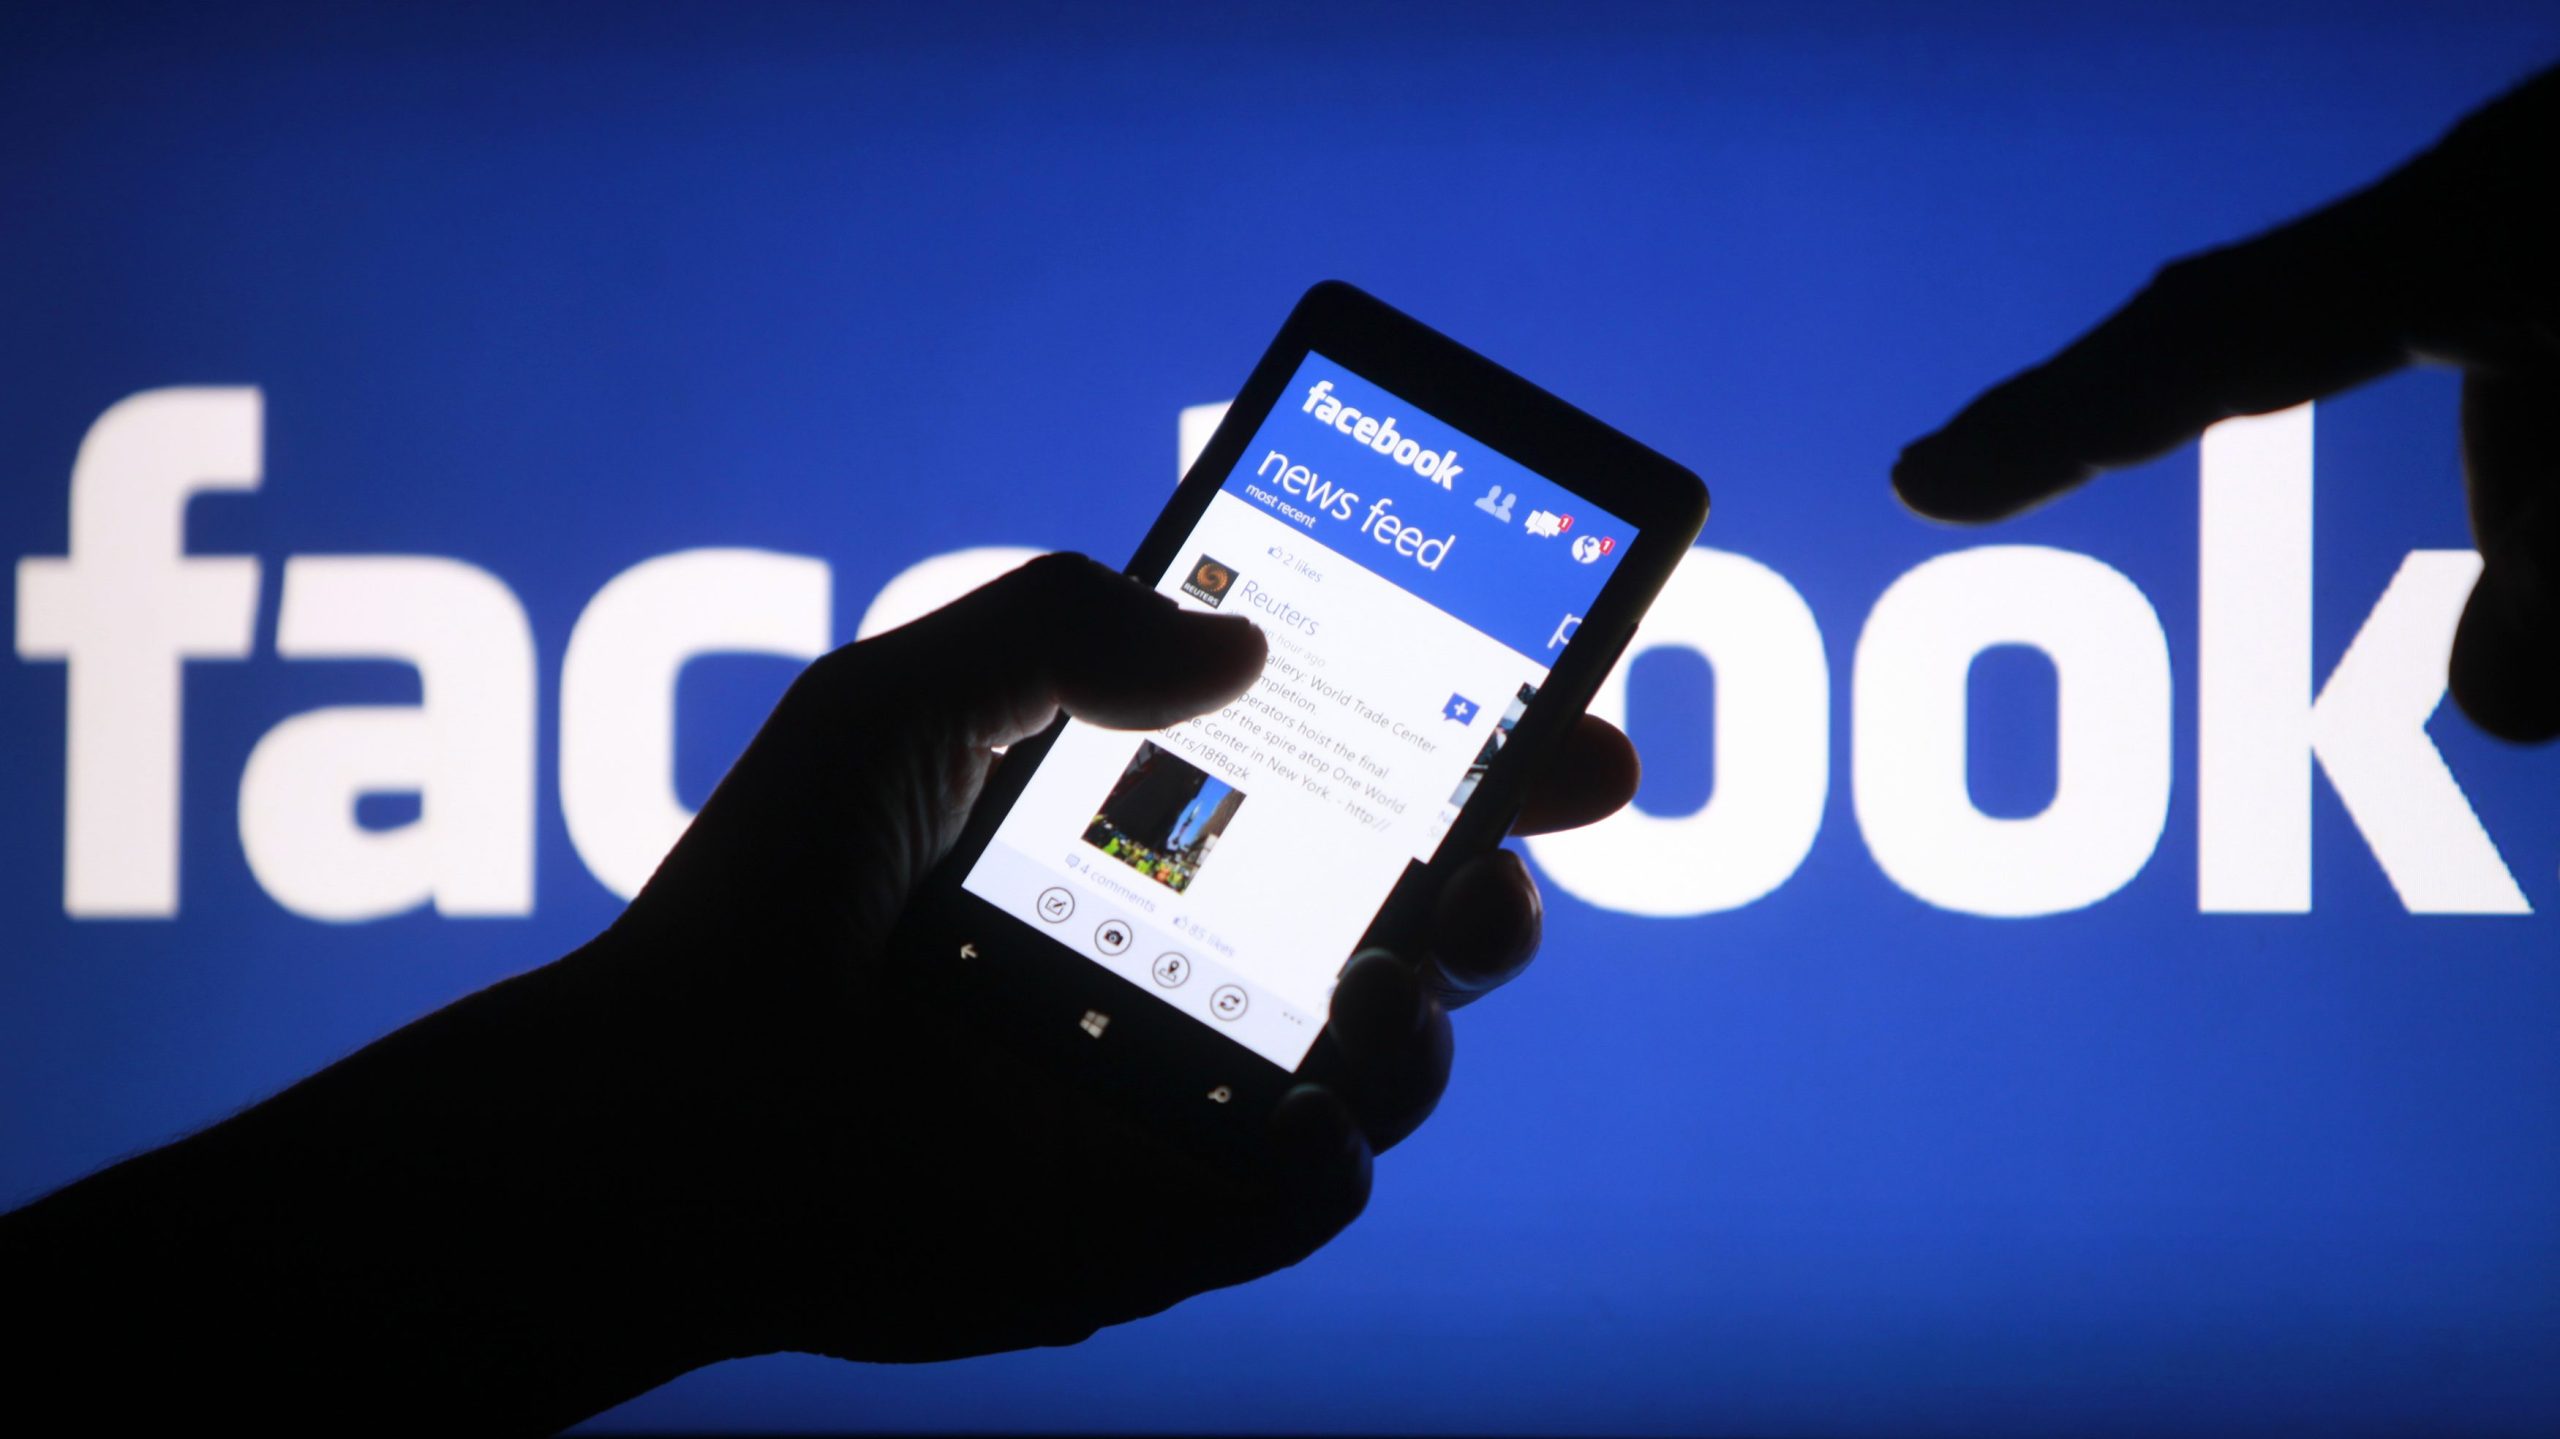 Eπικεφαλής Facebook Ευρώπης: Έρχονται τεκτονικές αλλαγές που θα αλλάξουν τις κοινότητες των ανθρώπων θετικά